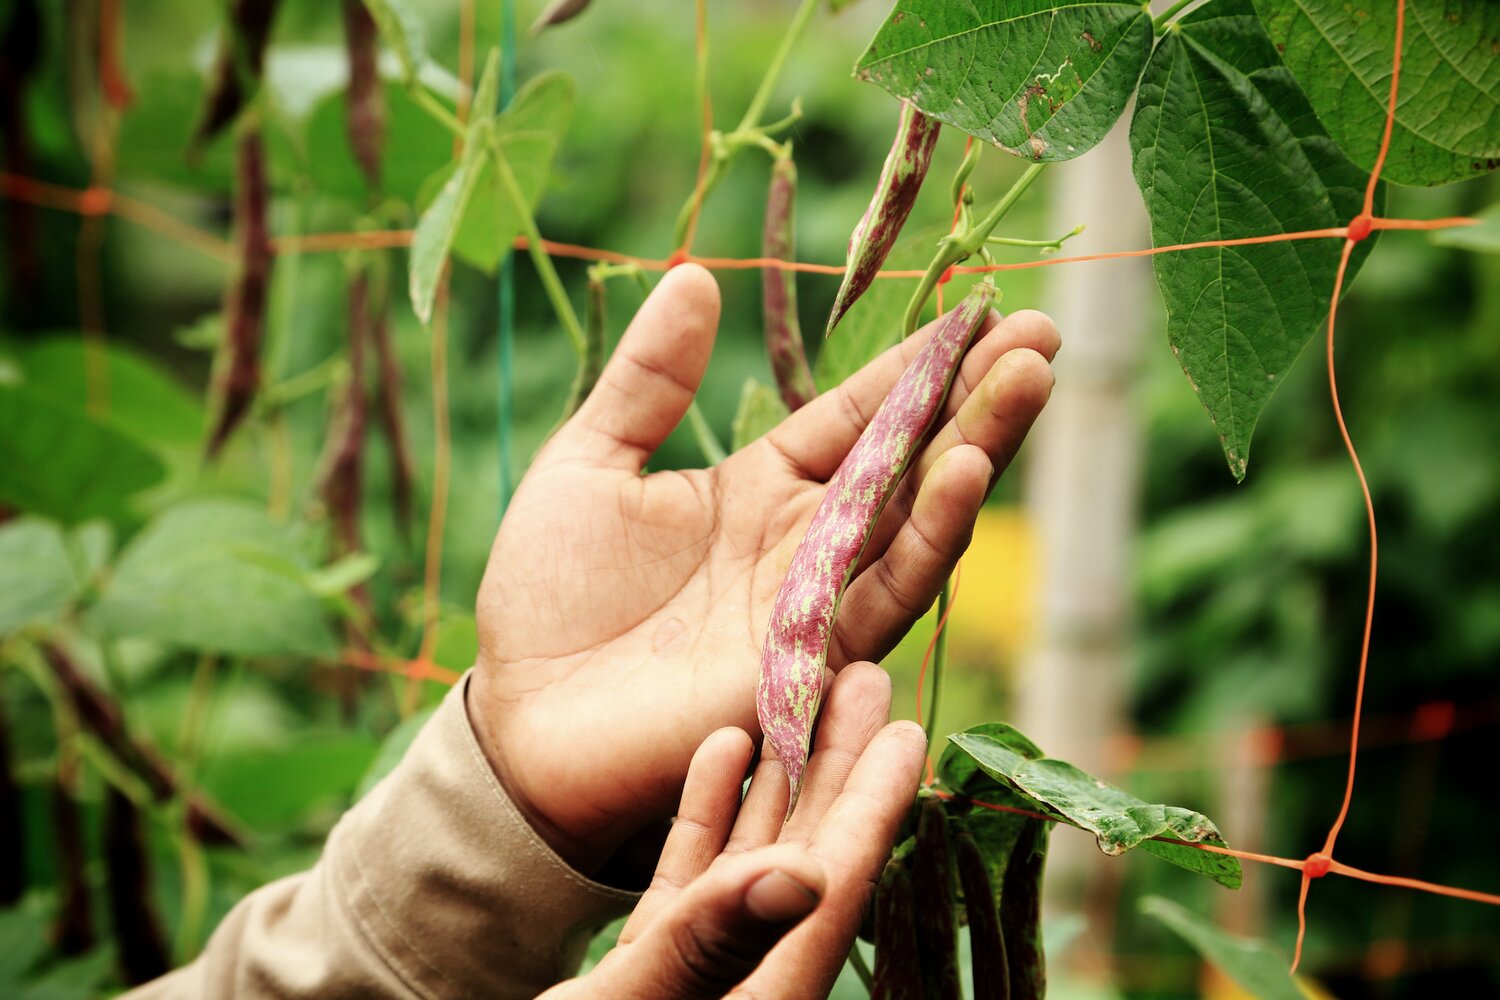 Hands holding bean pod on vine